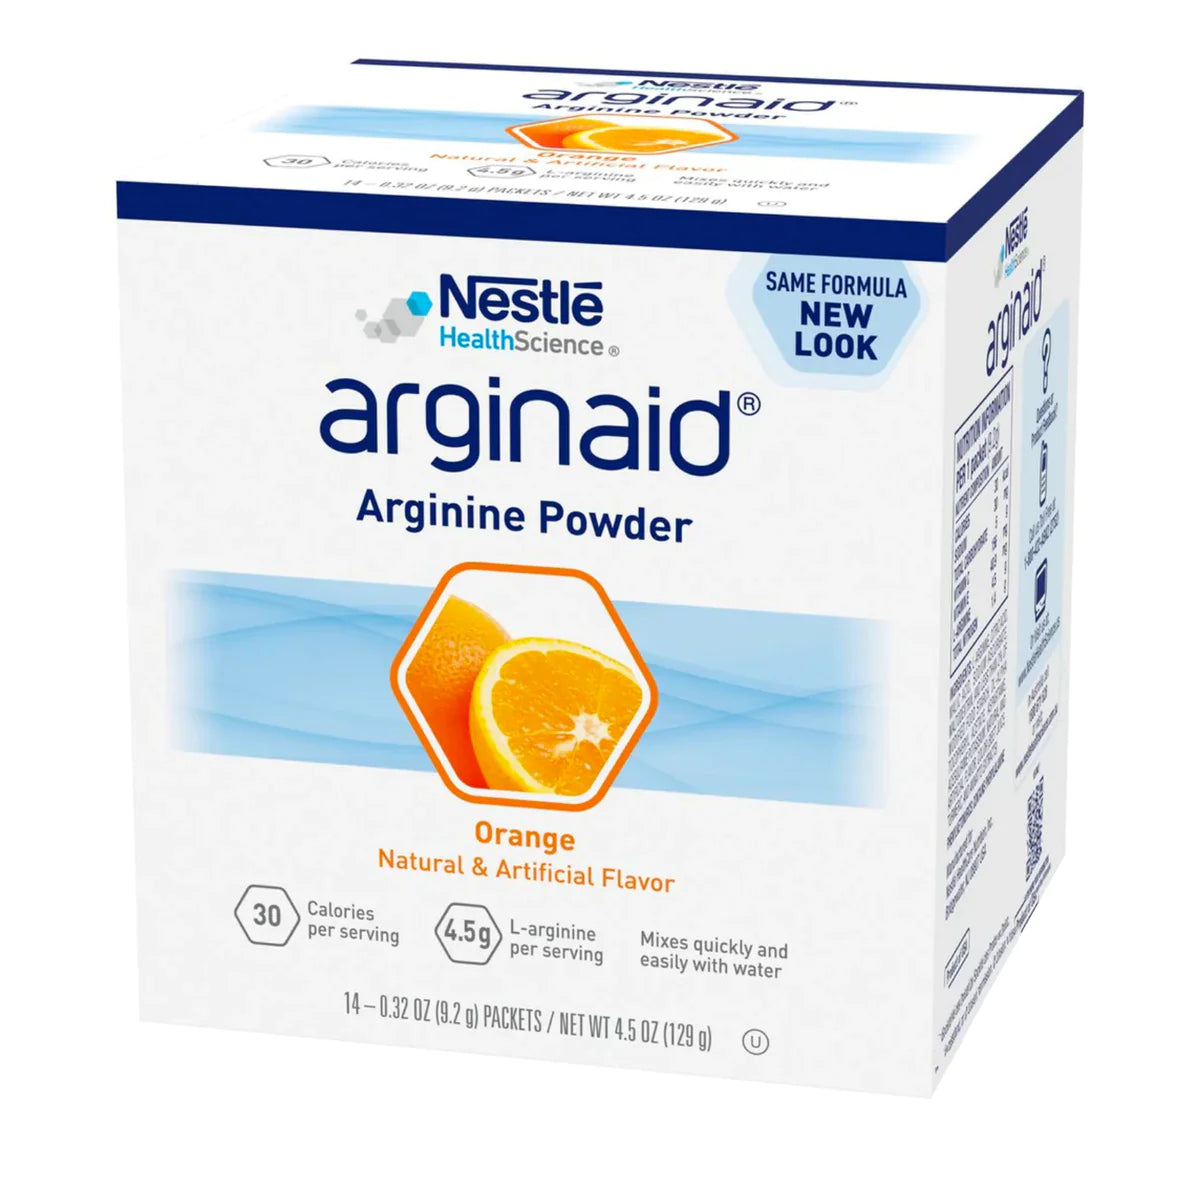 Arginaid Arginine Powder Orange Flavoured - 14 Sachet x 9.2g